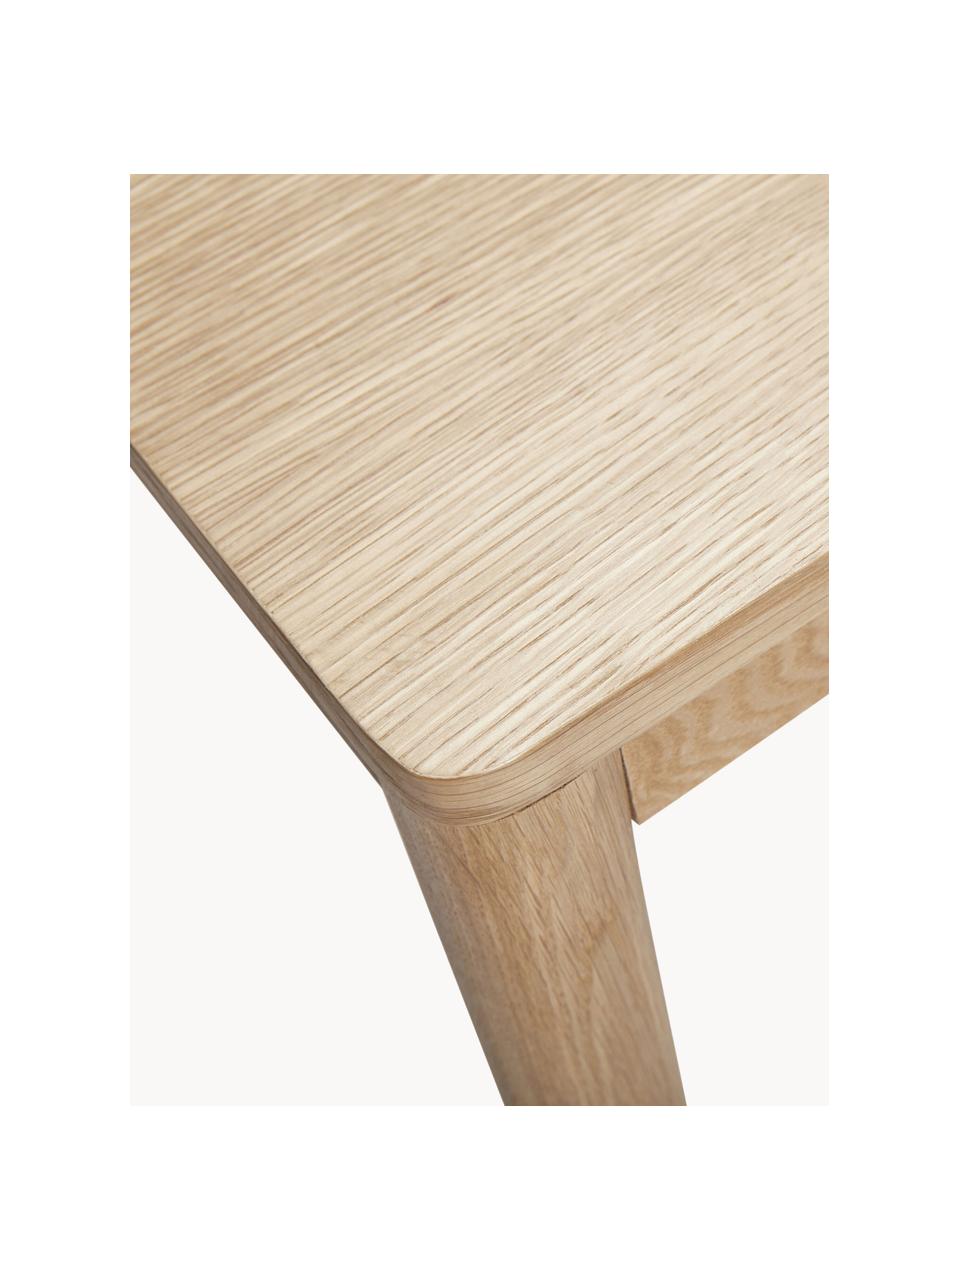 Esstisch Acorn aus Eichenholz, 140 x 80 cm, Eichenholz

Dieses Produkt wird aus nachhaltig gewonnenem, FSC®-zertifiziertem Holz gefertigt., Eichenholz, B 140 x T 80 cm